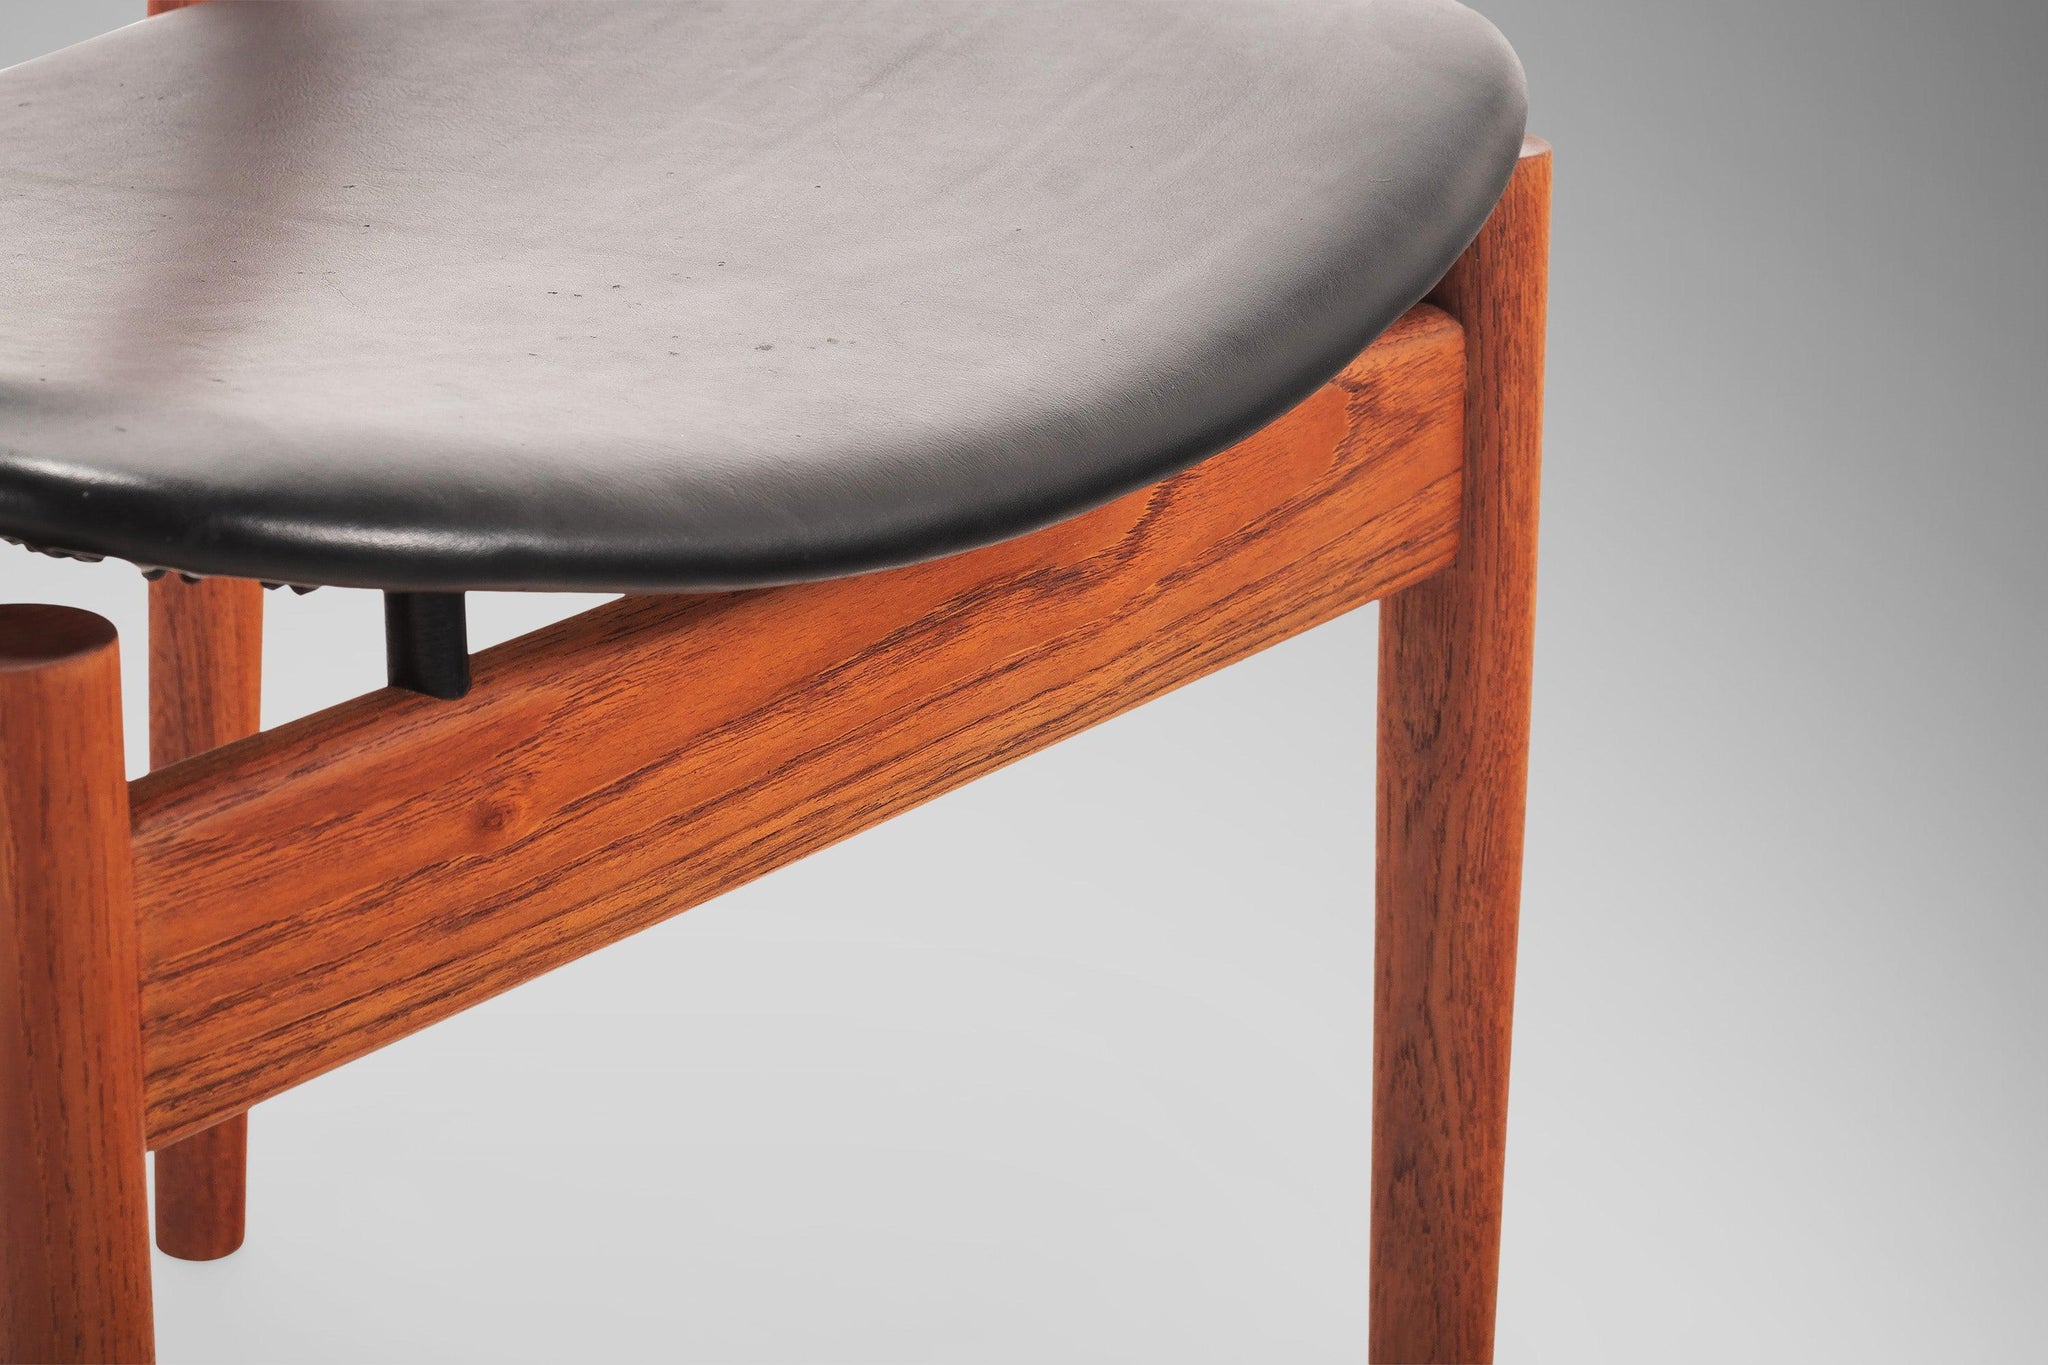 Model 197 Side / Desk Chair in Walnut & Leather by Finn Juhl for Franc